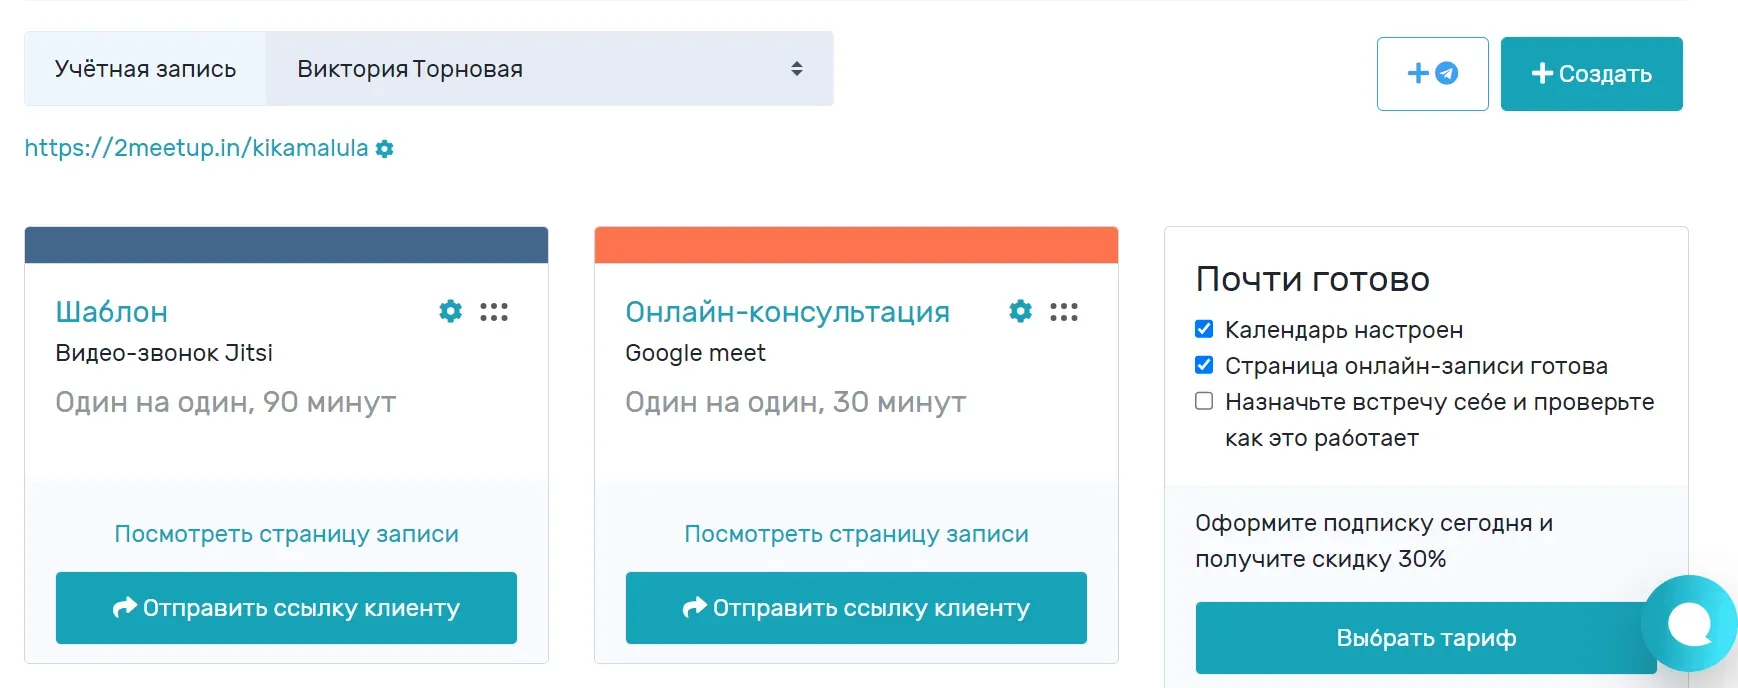 Приложения для онлайн-записи: пять русскоязычных альтернатив Calendly